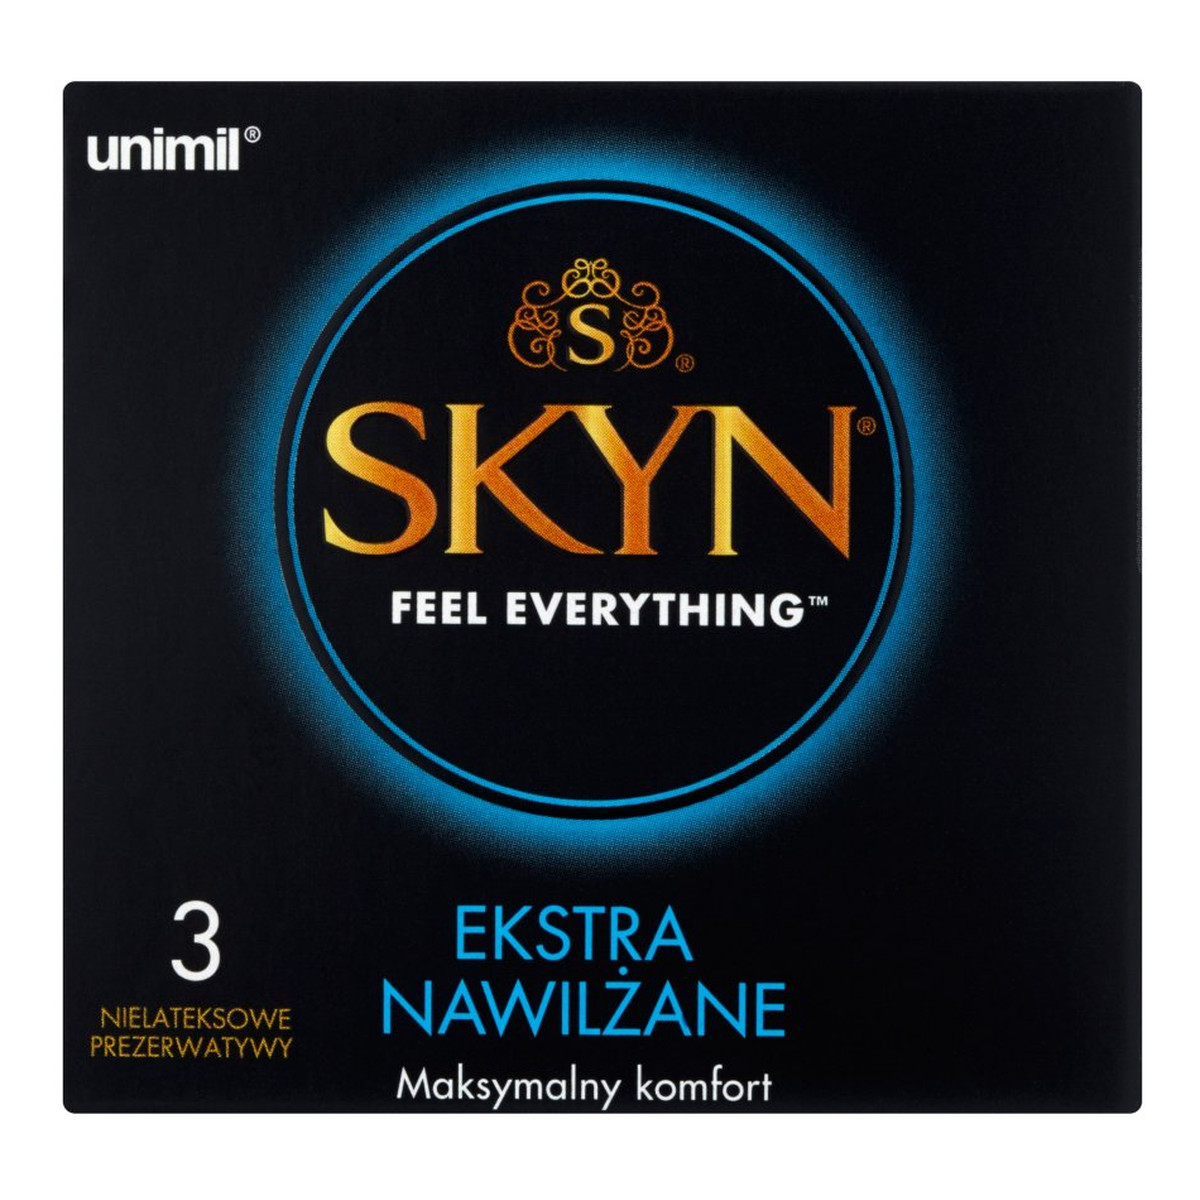 Unimil Skyn Feel Everything Ekstra nawilżane Nielateksowe prezerwatywy 3szt